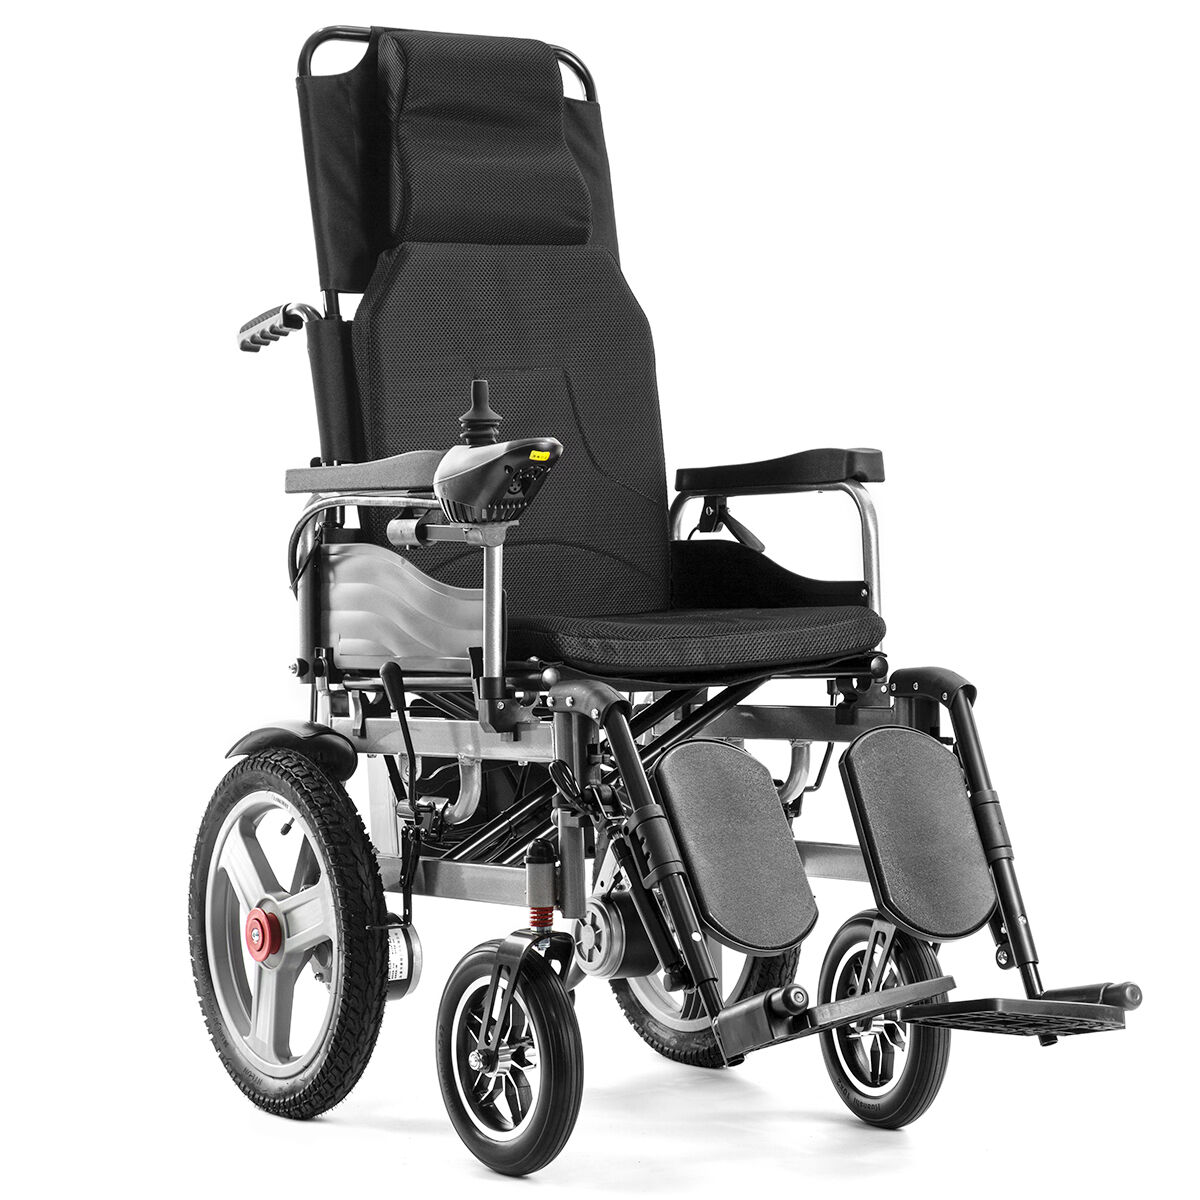 BC-ES6003A-LW polohovací elektrický invalidní vozík skládací do každého terénu